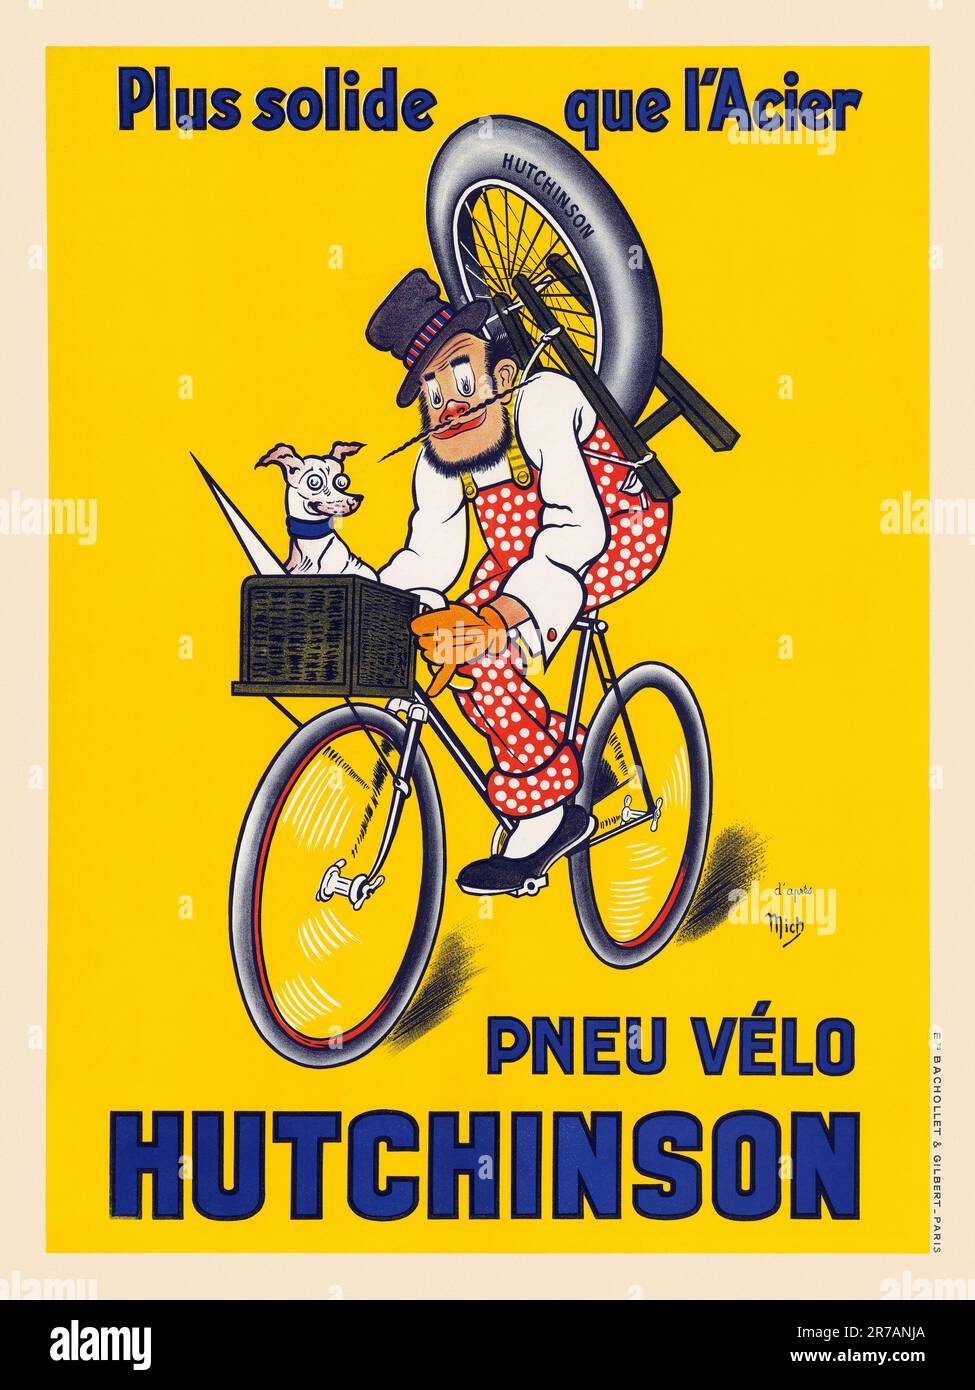 Plus solide que l'acier. Pneu vélo Hutchinson von Jean Marie Michel Liebeaux (Mich 1881-1923). Poster veröffentlicht ca. 1910 in Frankreich. Stockfoto